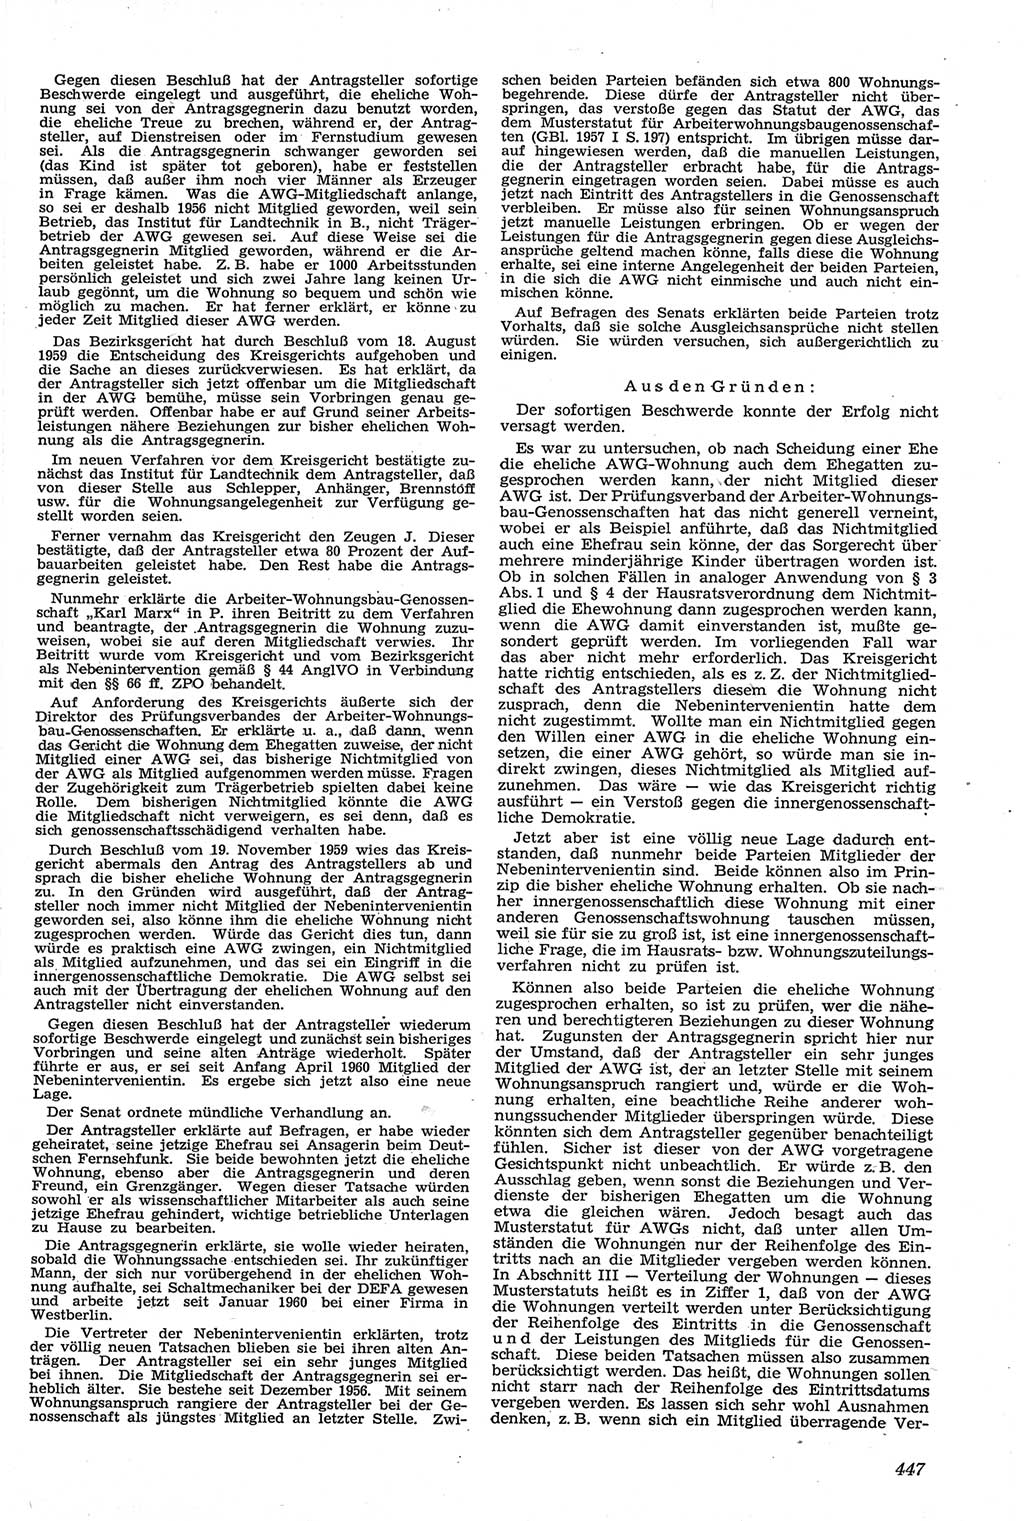 Neue Justiz (NJ), Zeitschrift für Recht und Rechtswissenschaft [Deutsche Demokratische Republik (DDR)], 14. Jahrgang 1960, Seite 447 (NJ DDR 1960, S. 447)